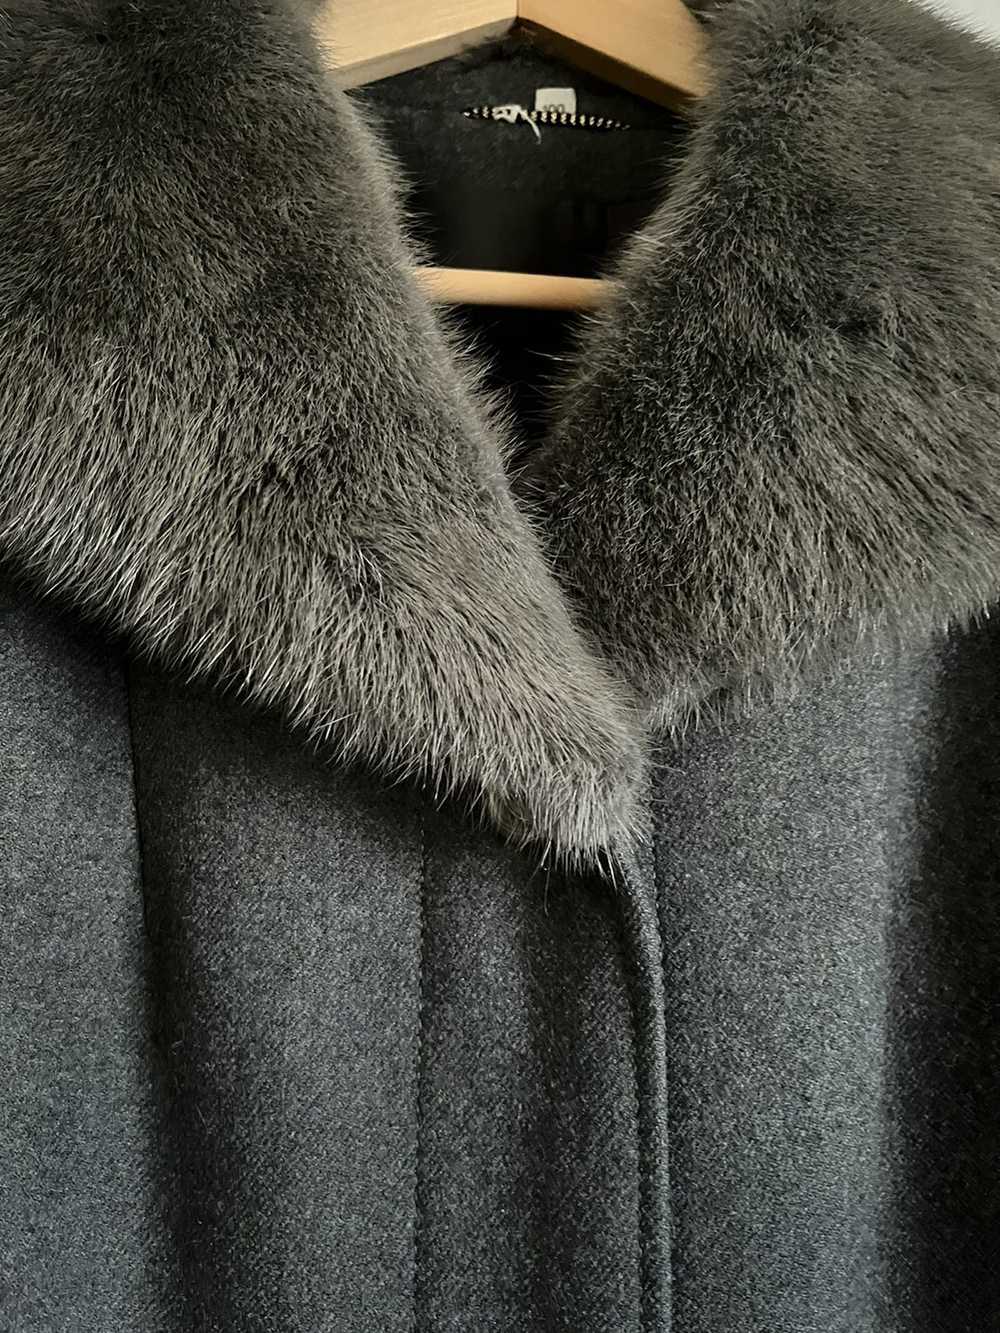 Cashmere & Wool × Mink Fur Coat × Vintage Vintage… - image 2